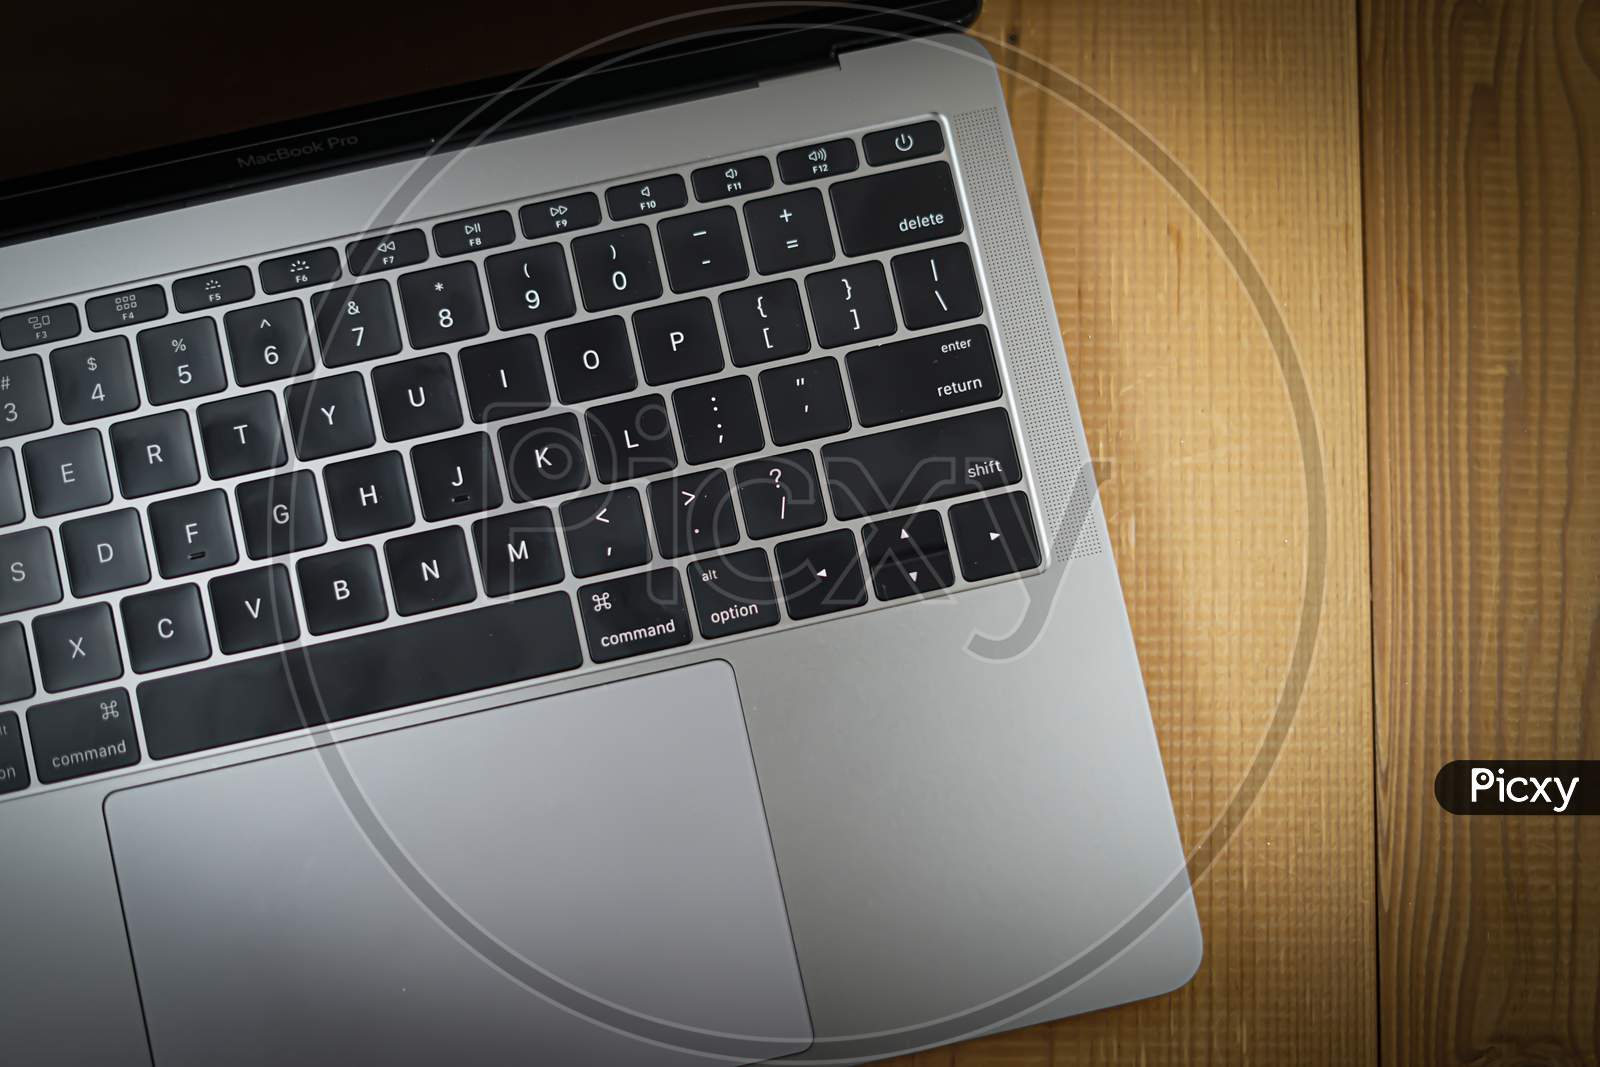 Keyboard Image Of Stylish Laptop